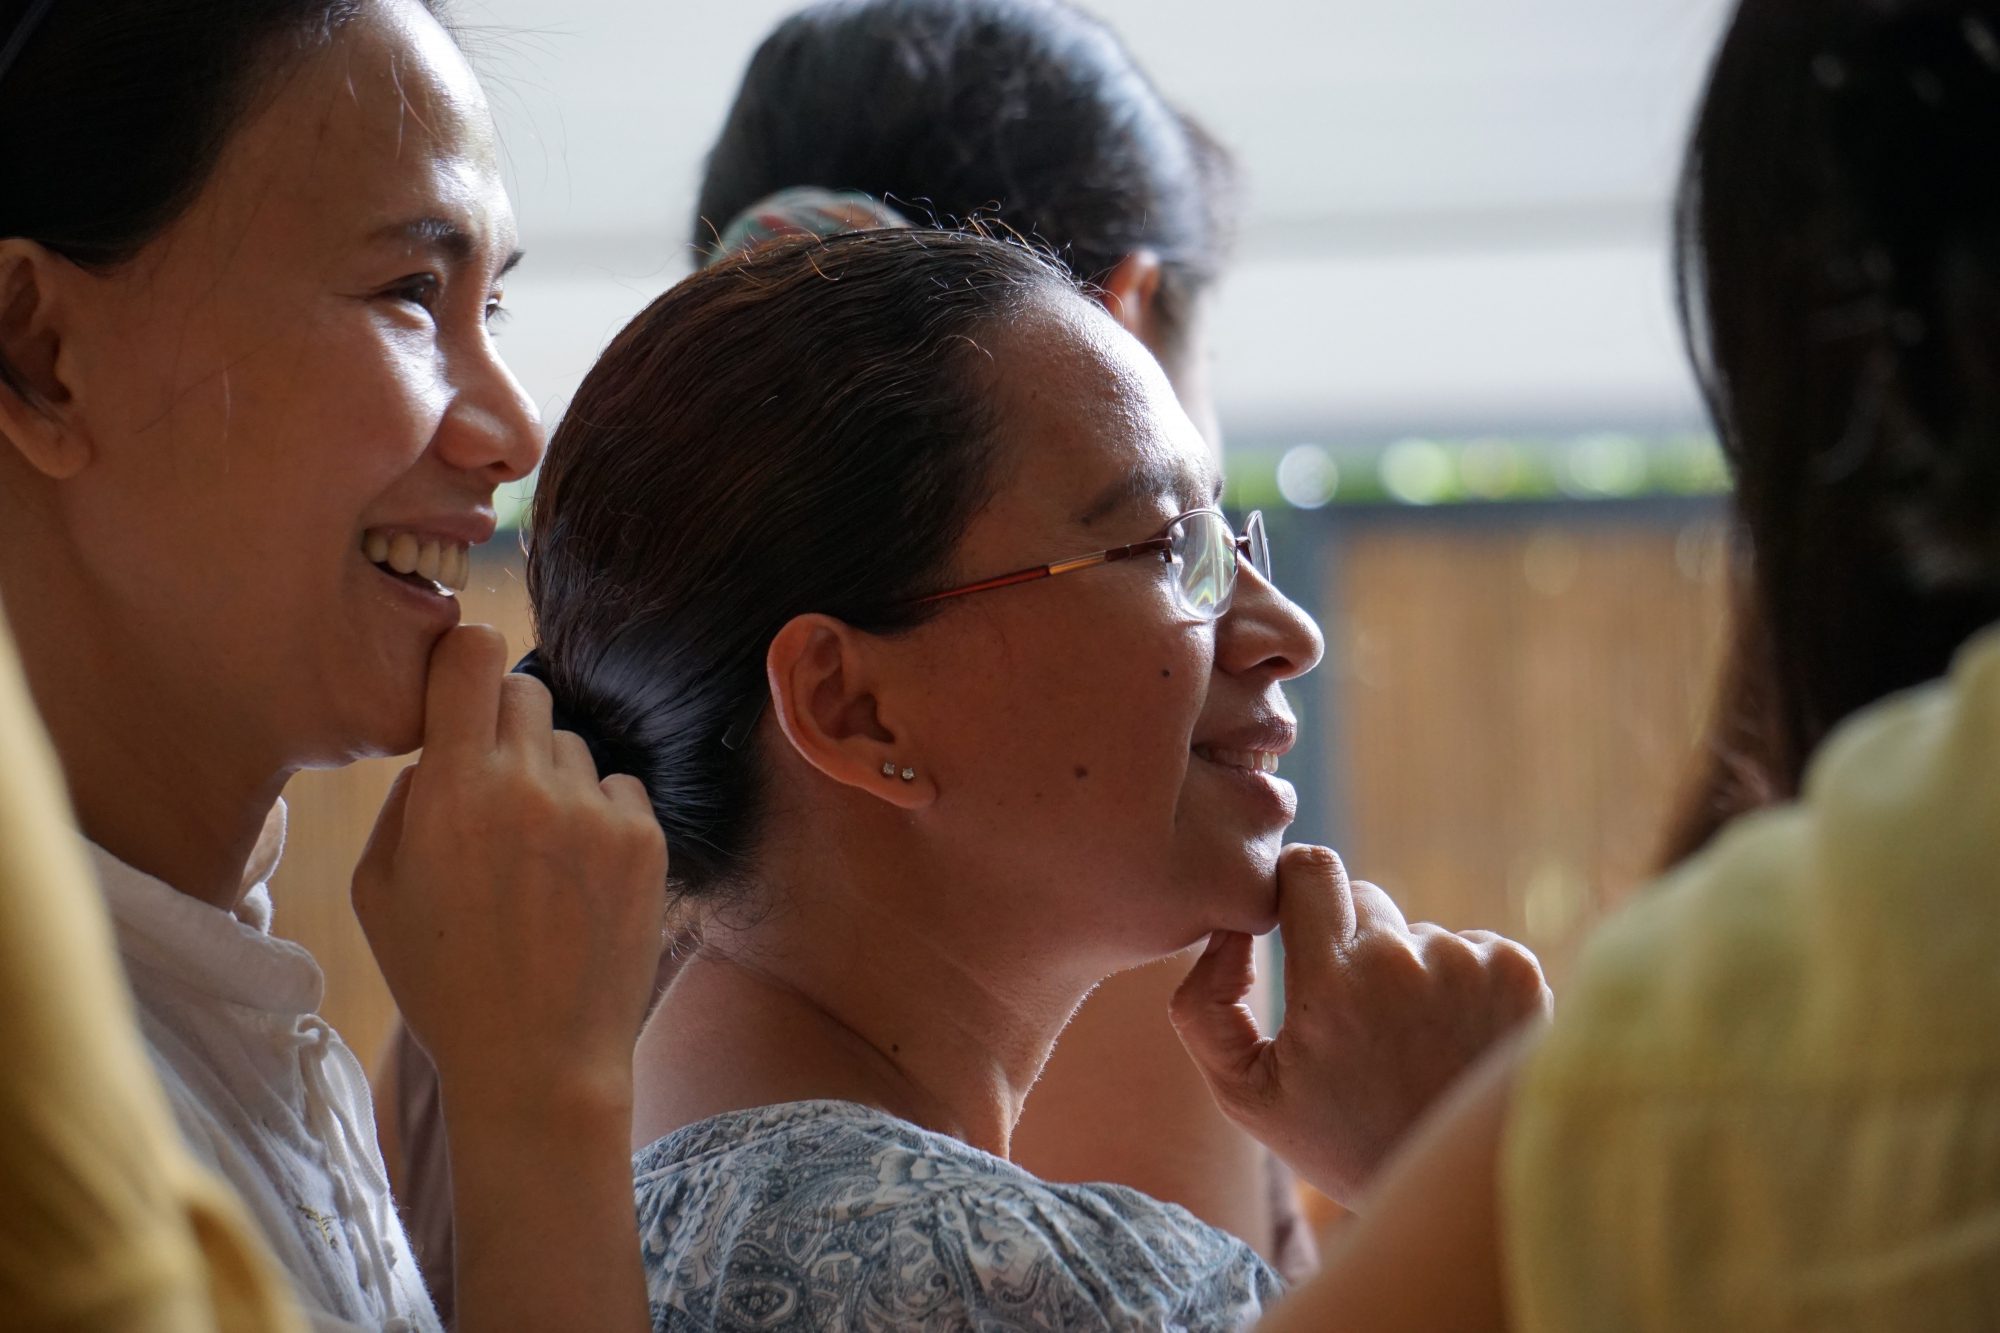 Γυναίκες στις Φιλιππίνες: «Θέλουμε να είμαστε ελεύθερες» - Οι γυναίκες διεκδικούν το δικαίωμα στο διαζύγιο